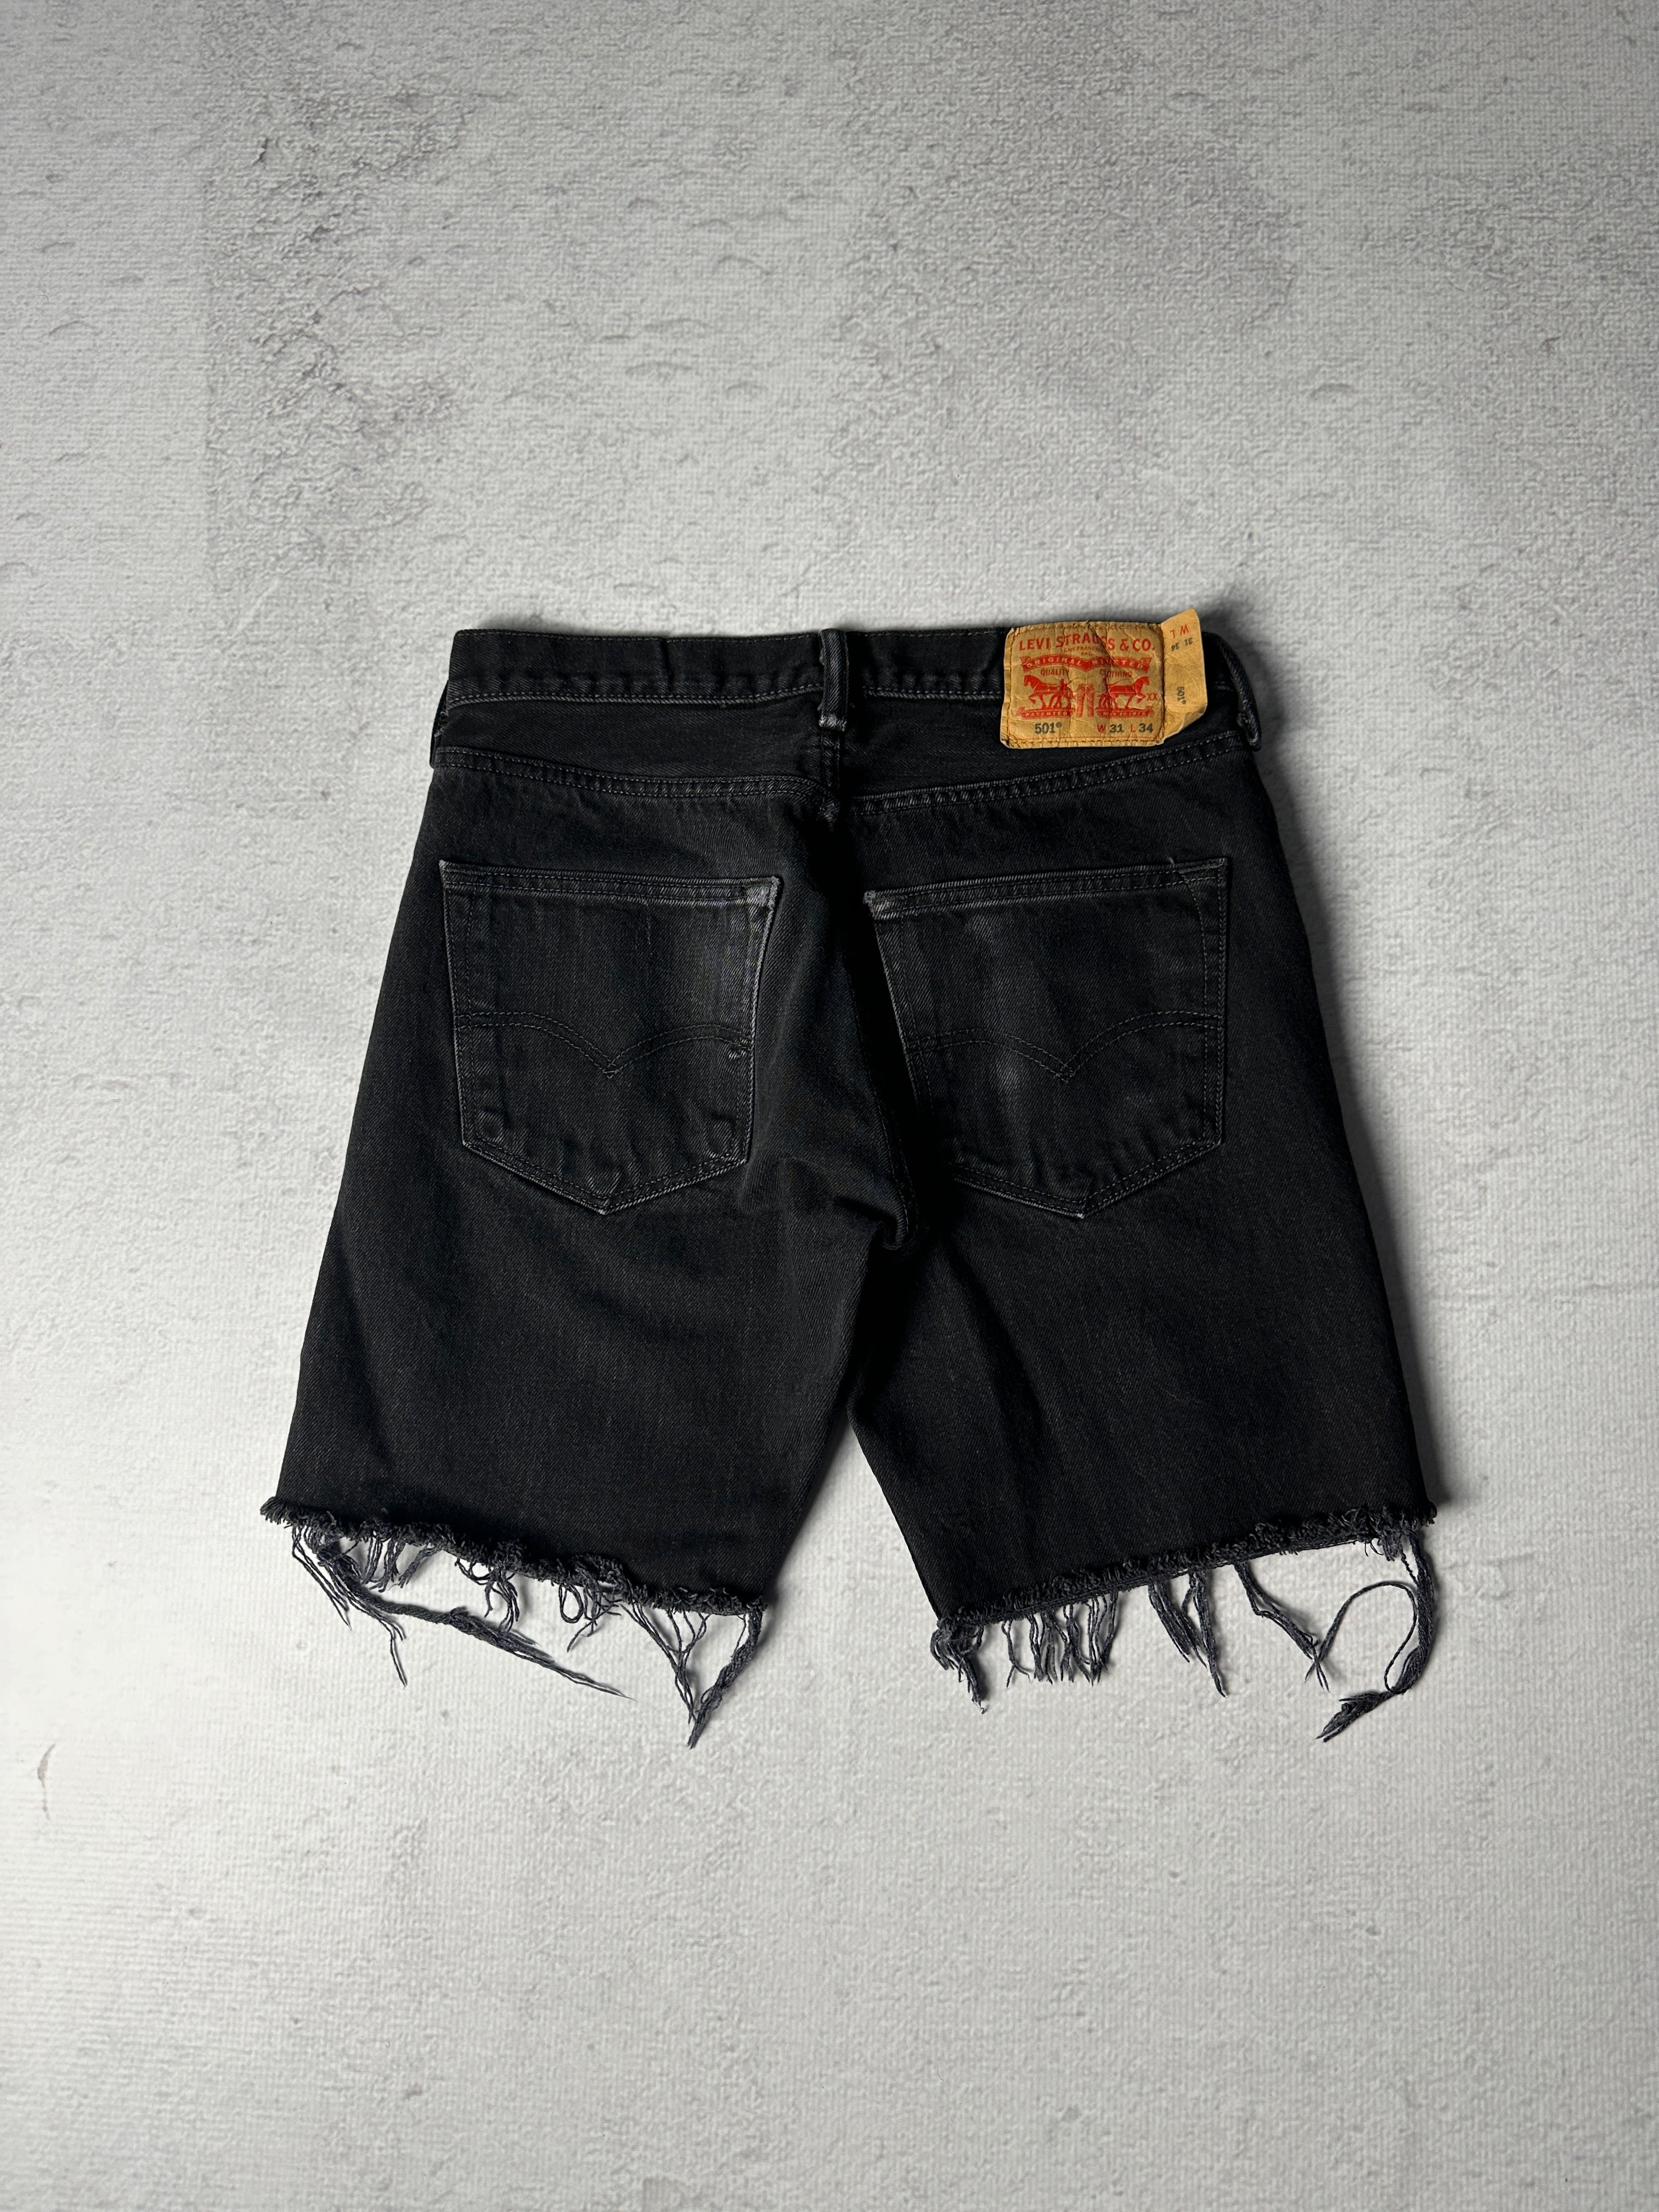 Vintage Levis 501 Jean Shorts - Men's 30W8L